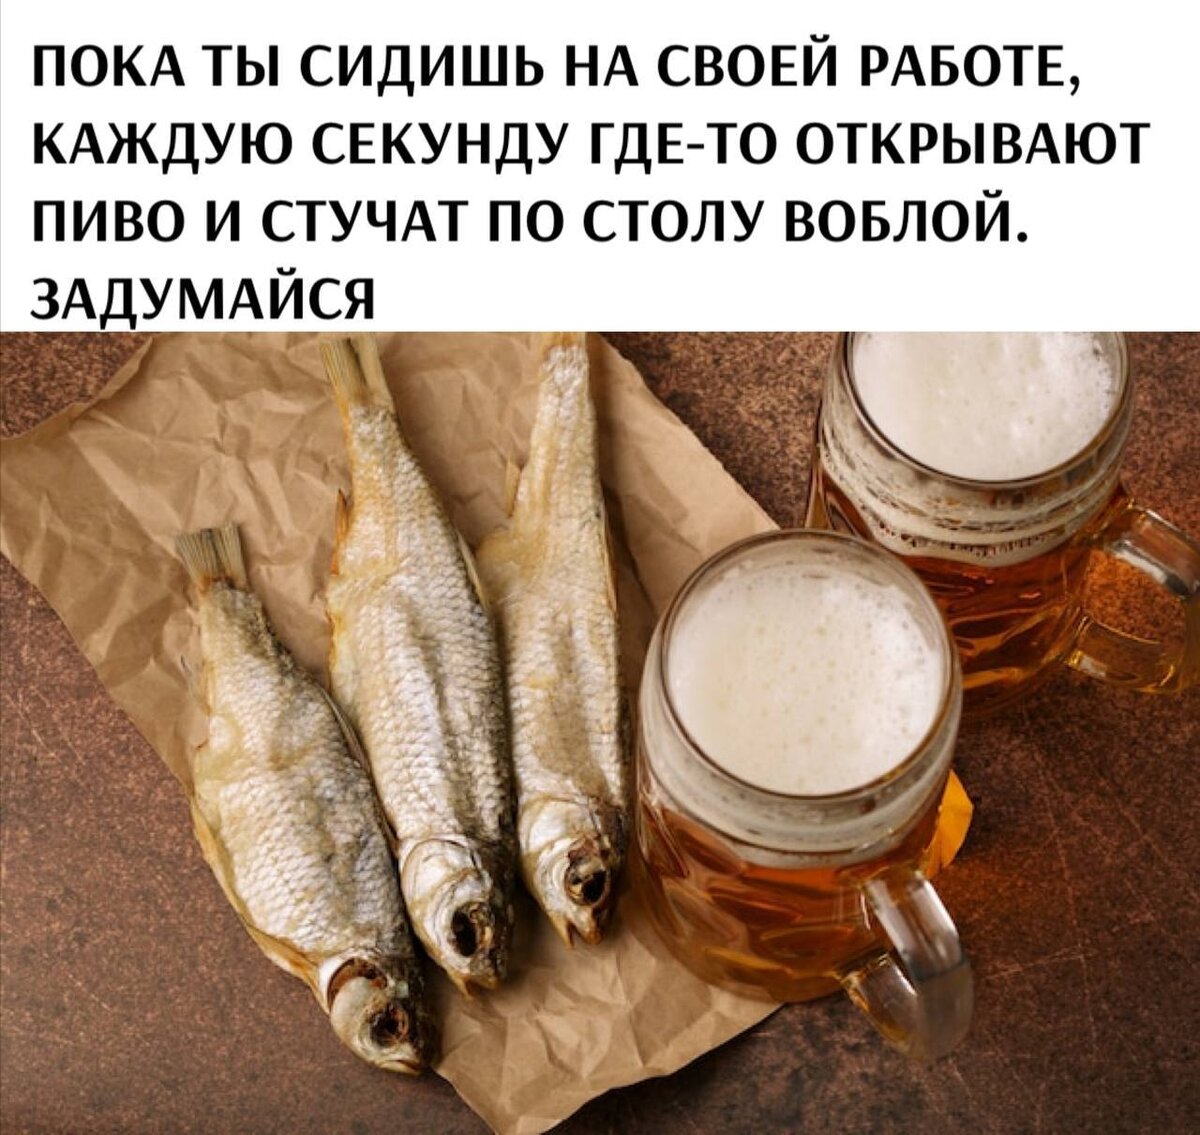 Феномен популярности вяленой воблы в России для многих до сих пор остаётся загадкой. В том числе и для меня... — Димон, ты что сейчас делаешь? — Заливную рыбу. — Ого! Ты умеешь готовить заливную рыбу?